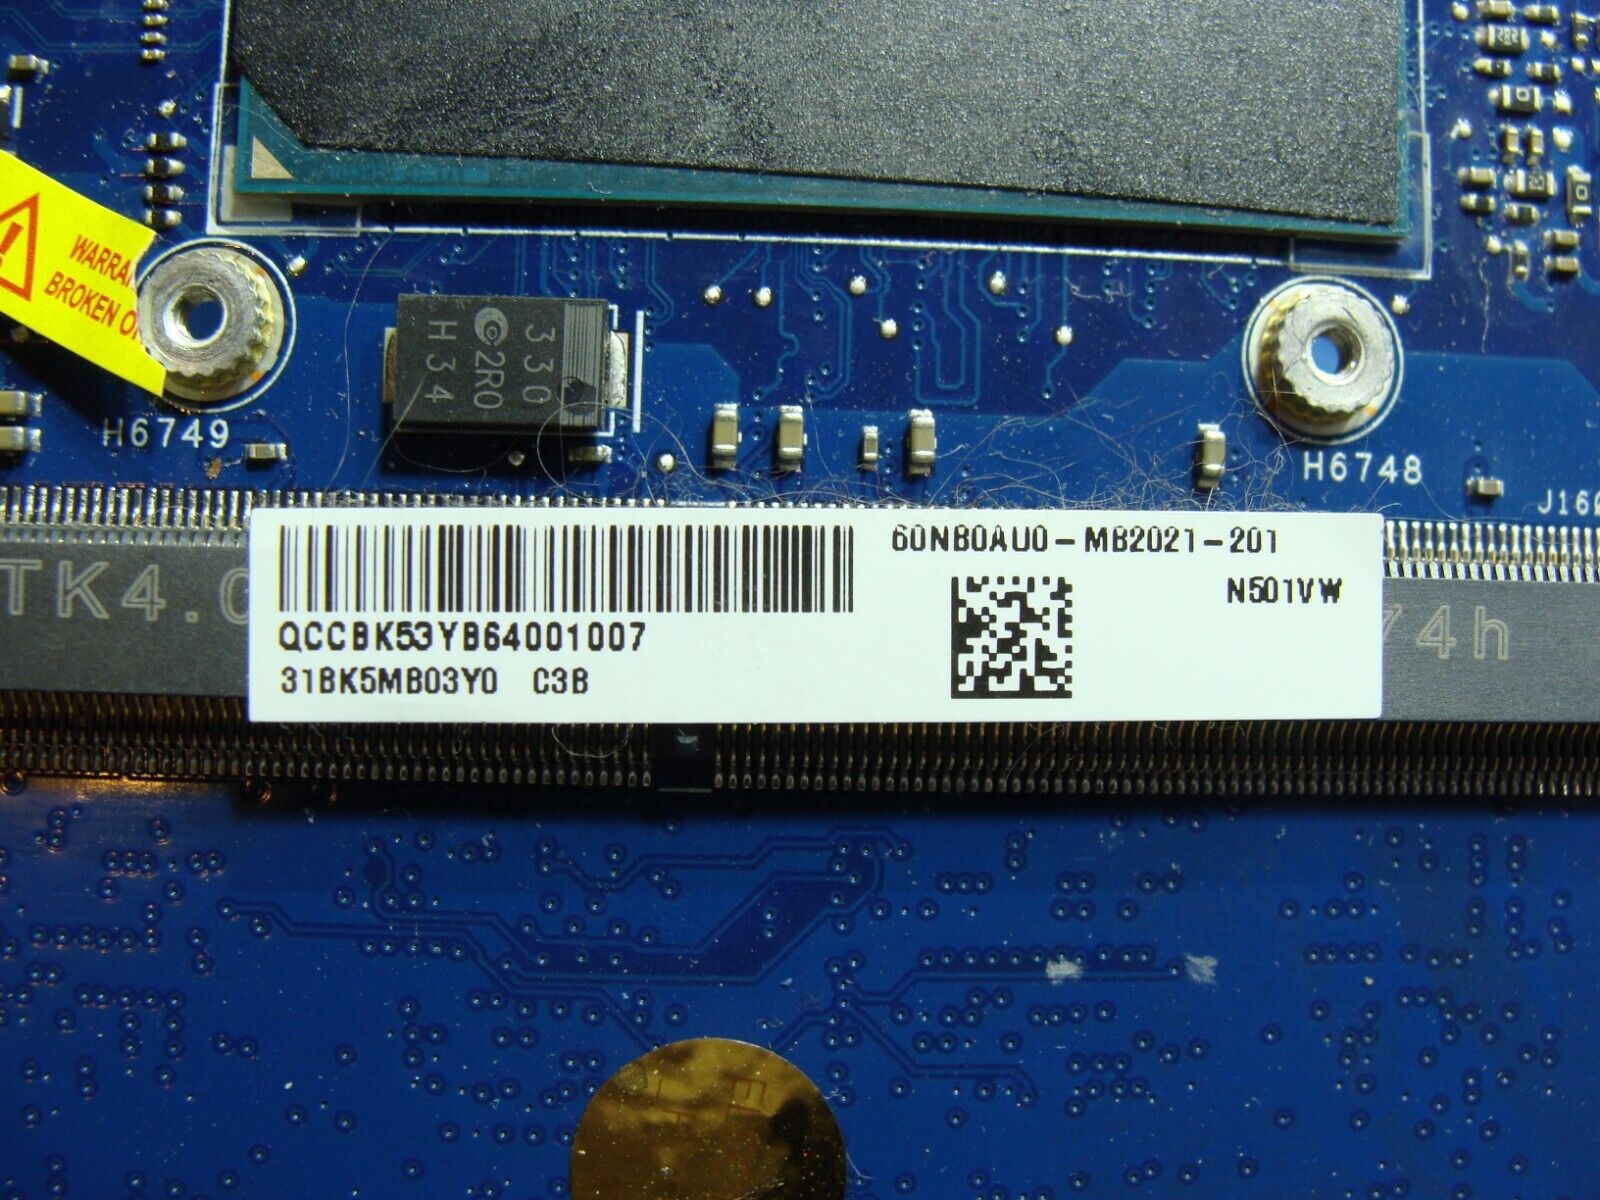 Asus ZenBook UX501V 15.6 i7-6700HQ 2.6GHz GTX960M 4G Motherboard 60NB0AU0-MB2021